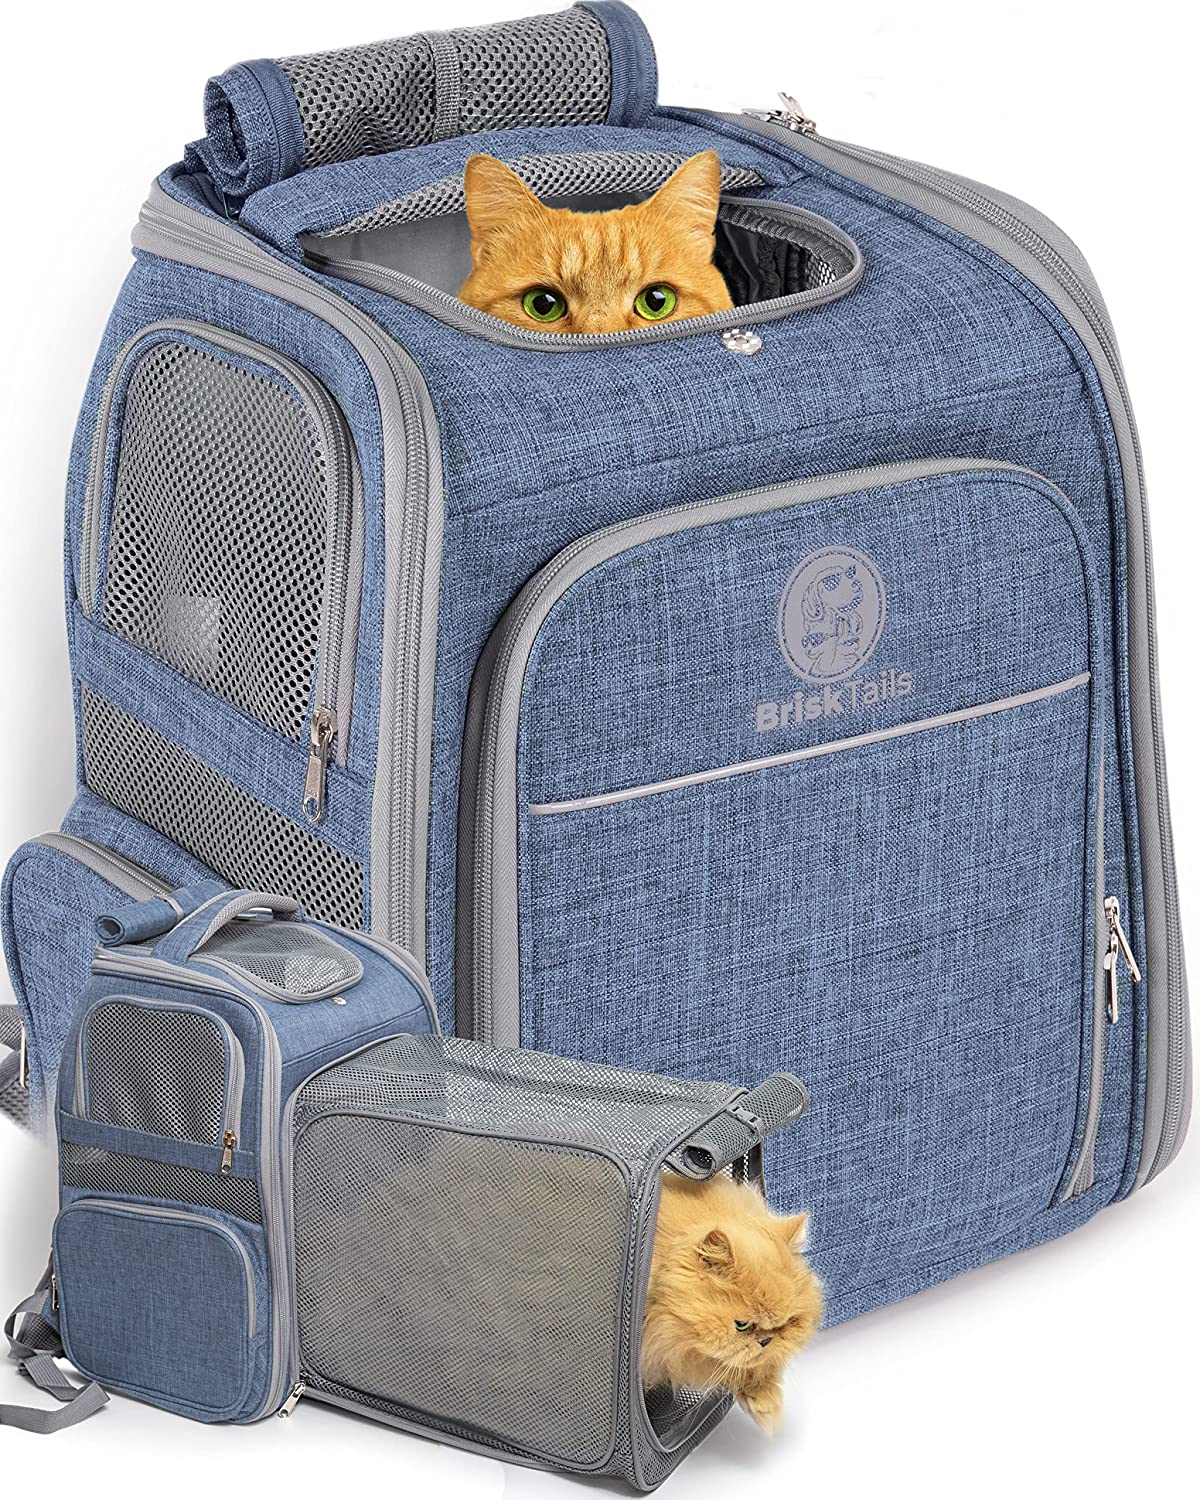 8. BriskTails Expandable Cat Backpack